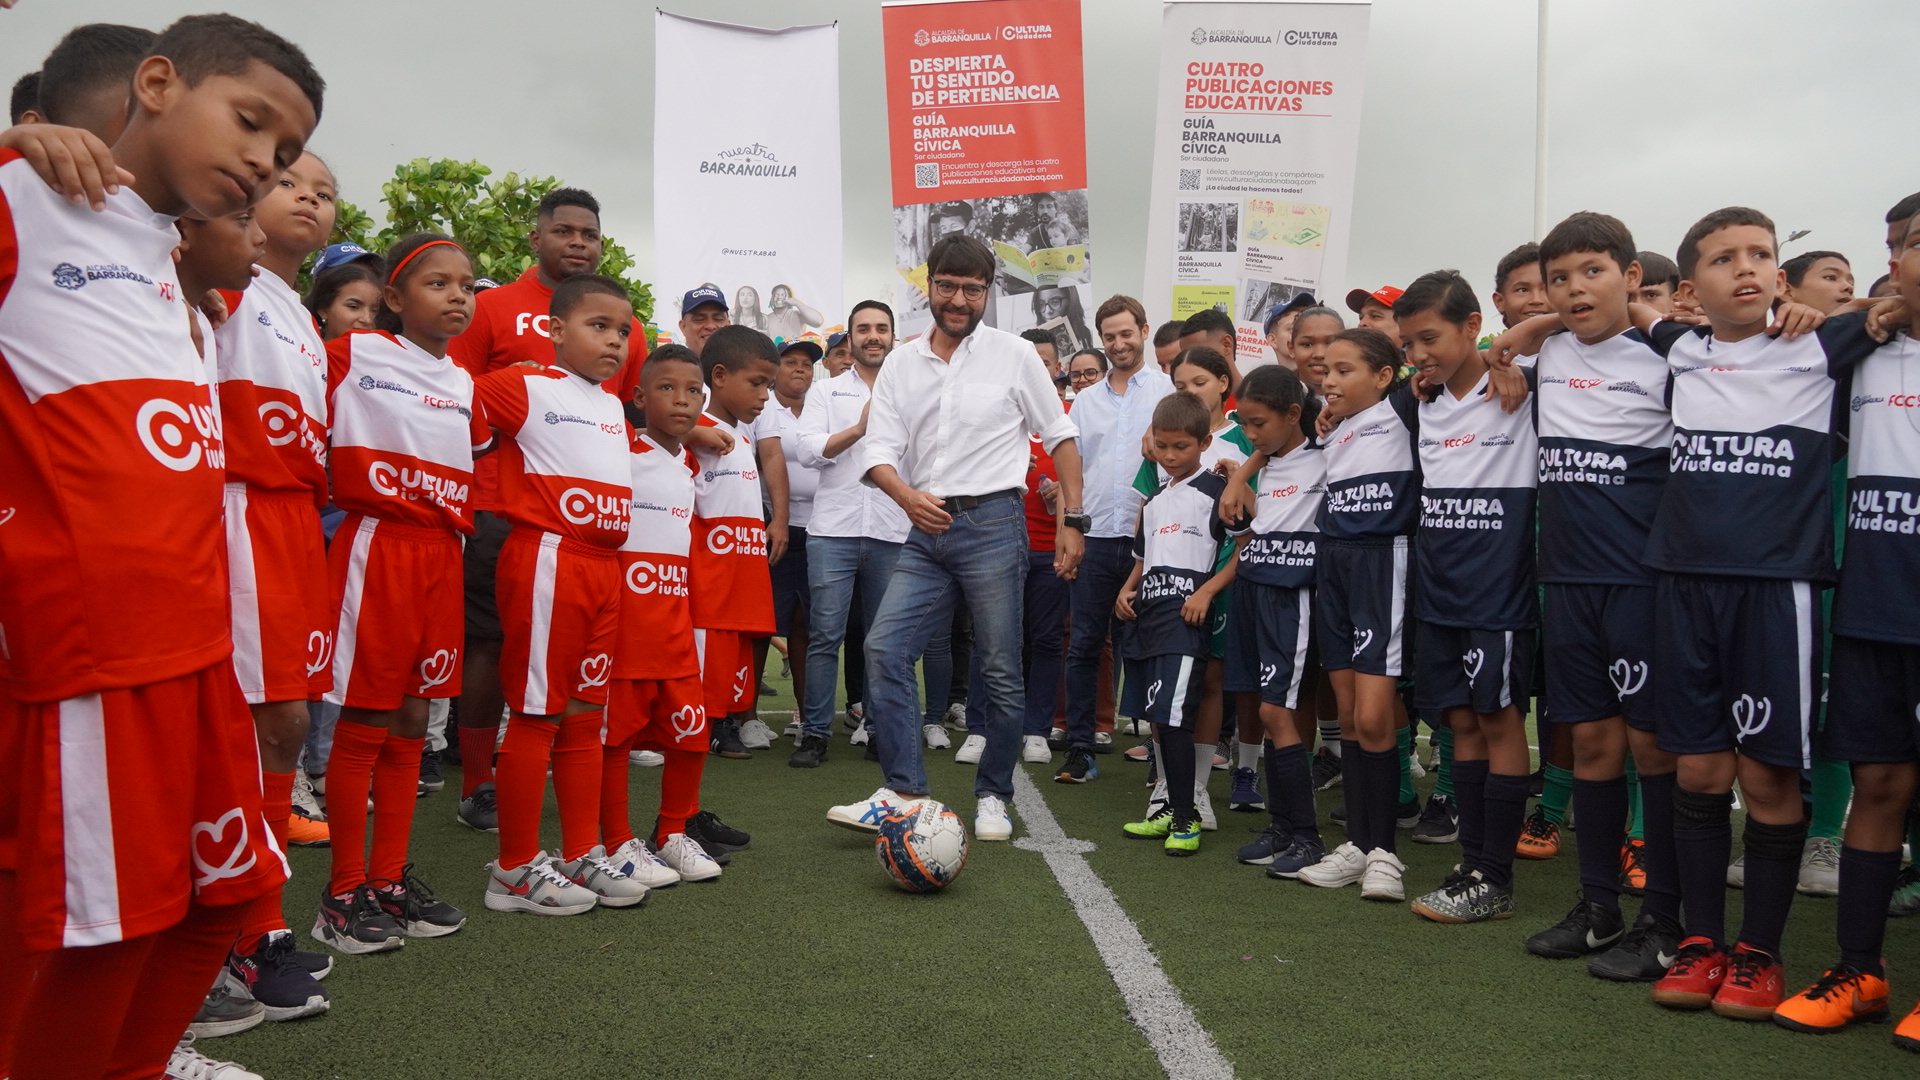 ‘Goles que Construyen Ciudadanía’, proyecto social presentado por el Distrito en alianza con Fútbol con Corazón e iniciativa Nuestra Barranquilla